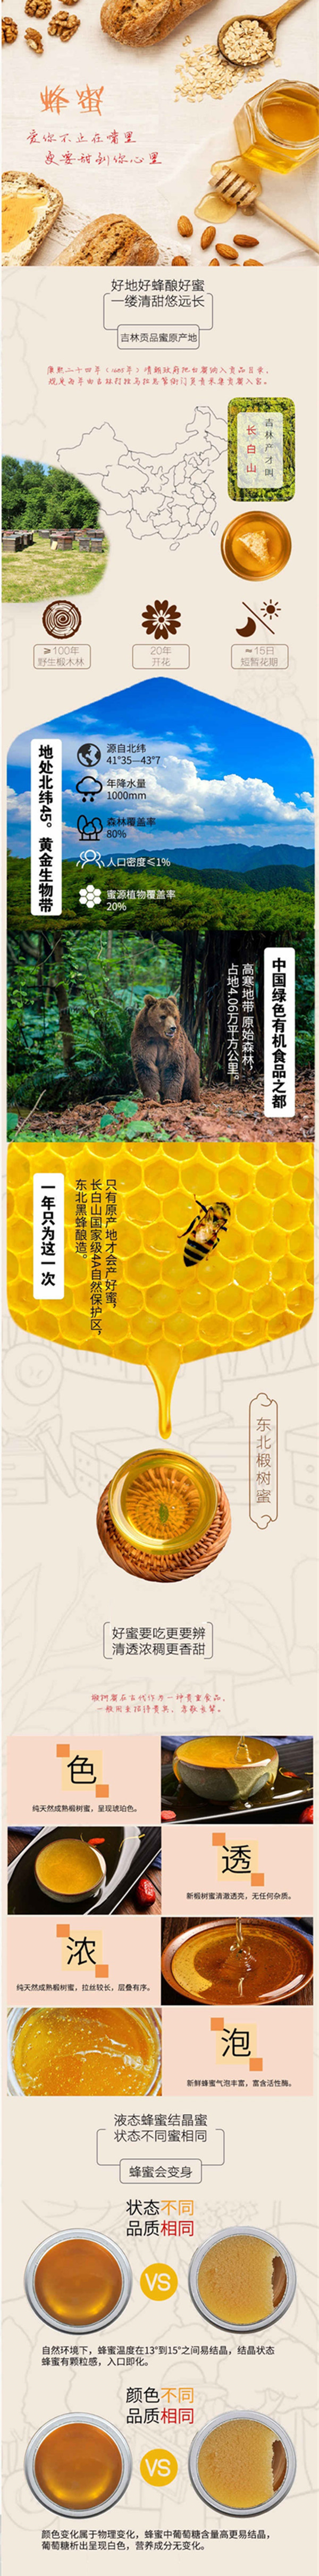 三河站 【东北特产】椴树蜜80g 蜂蜜 每盒8小包【低碳专享】